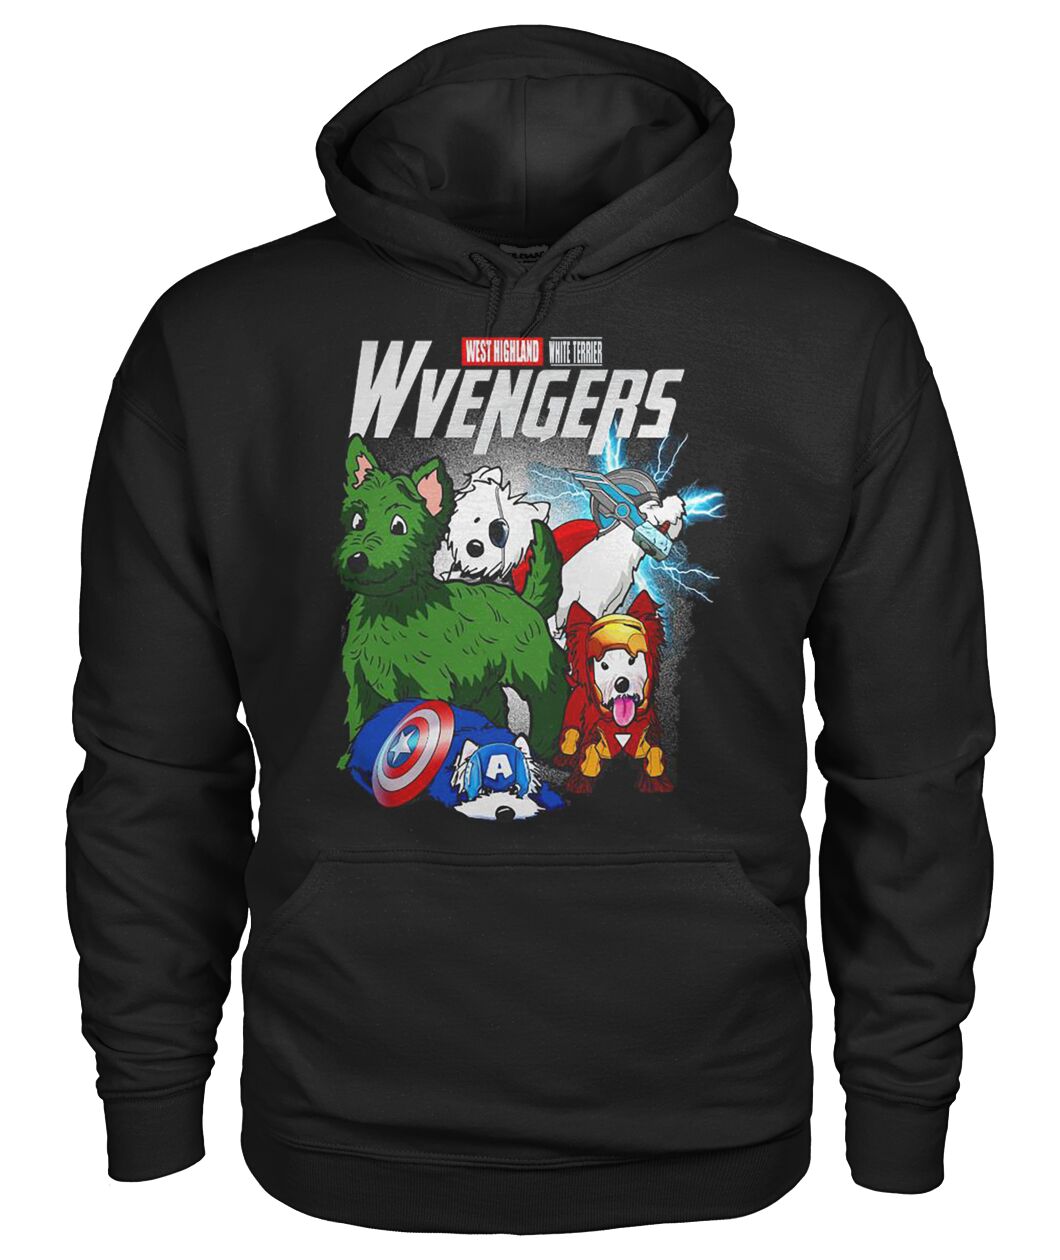 Wetie Terrier Wvengers 3D Hoodie, Shirt 8